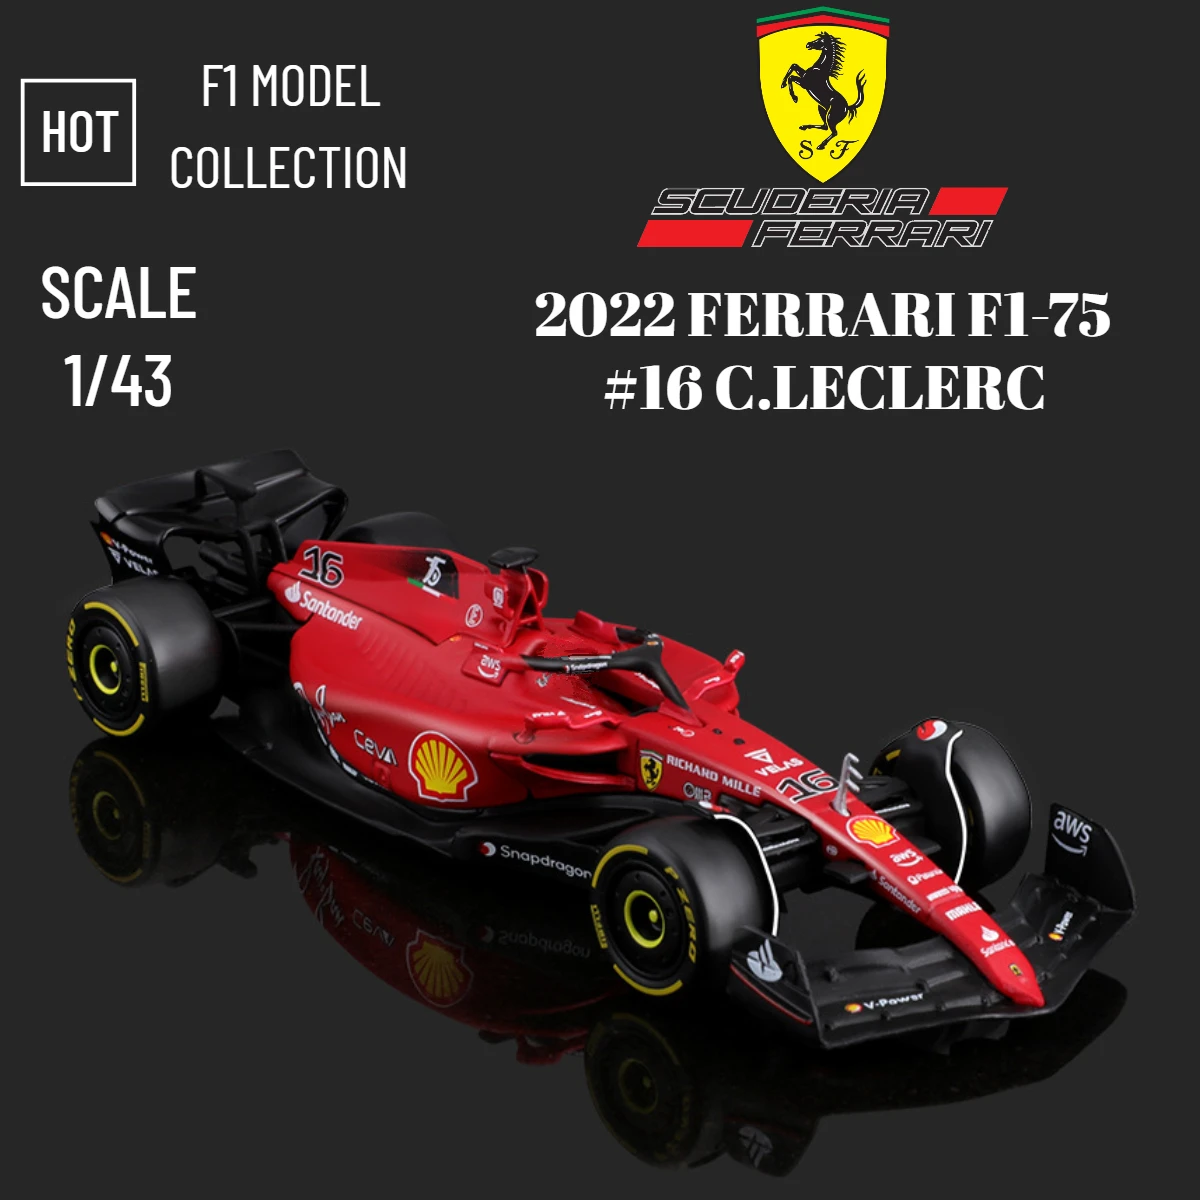 

Bburago New F1 2022 Car Model Scale 1:43 Ferrari F1-75 Leclerc Sainz Mclaren Alfa Romeo Mercedes Red Bull Racing Formula 1 Toy